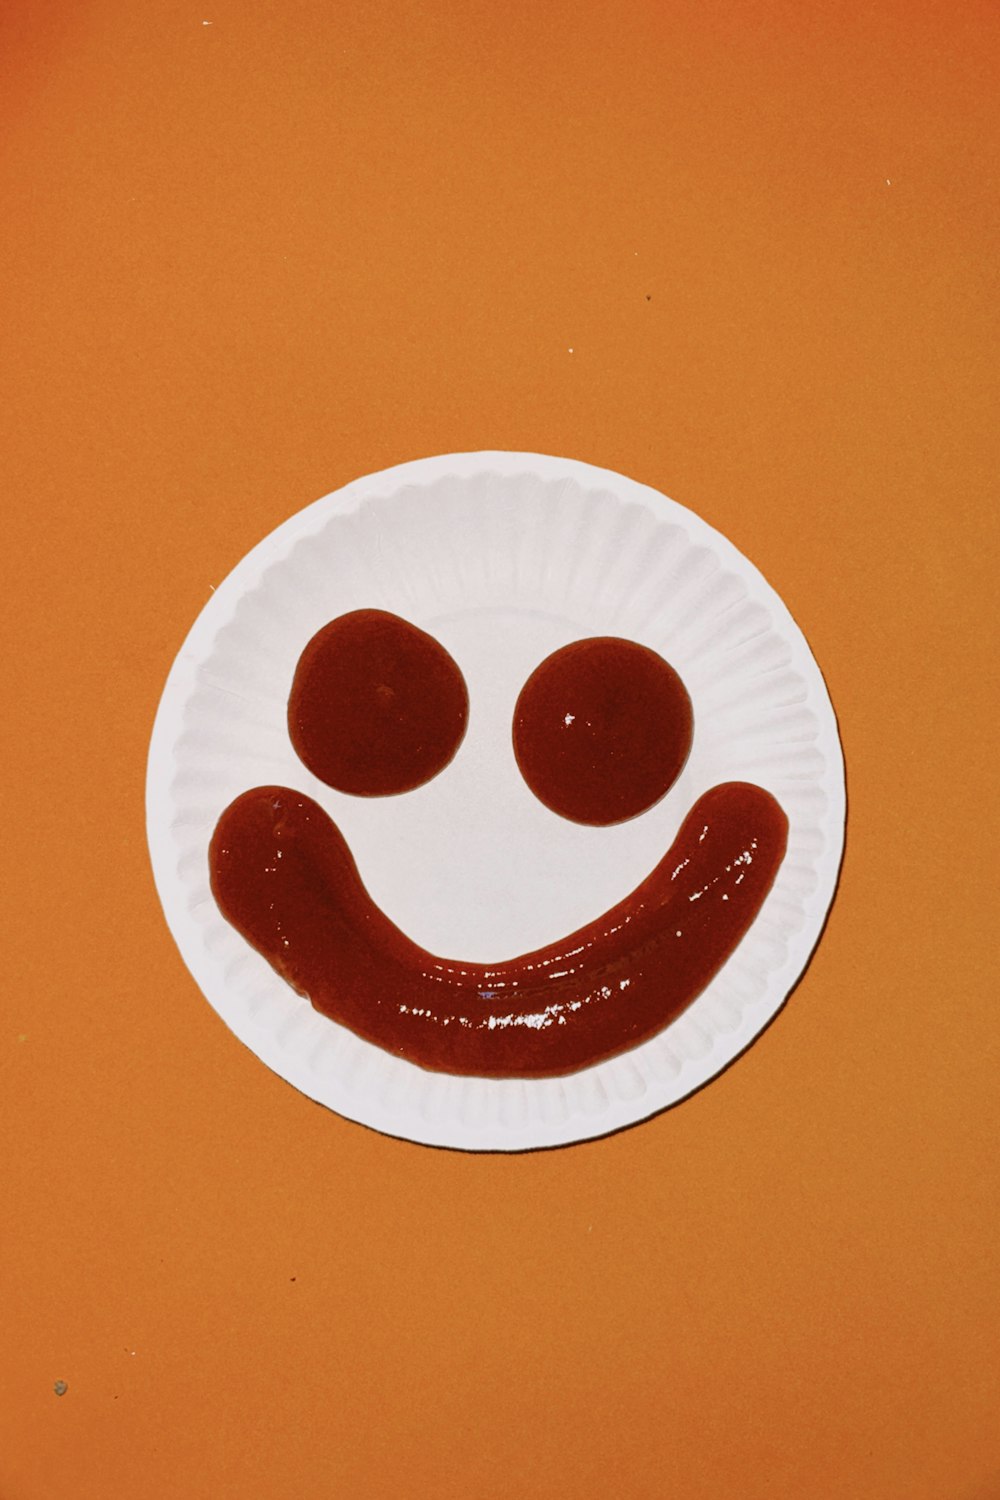 um prato de papel com um rosto sorridente desenhado nele